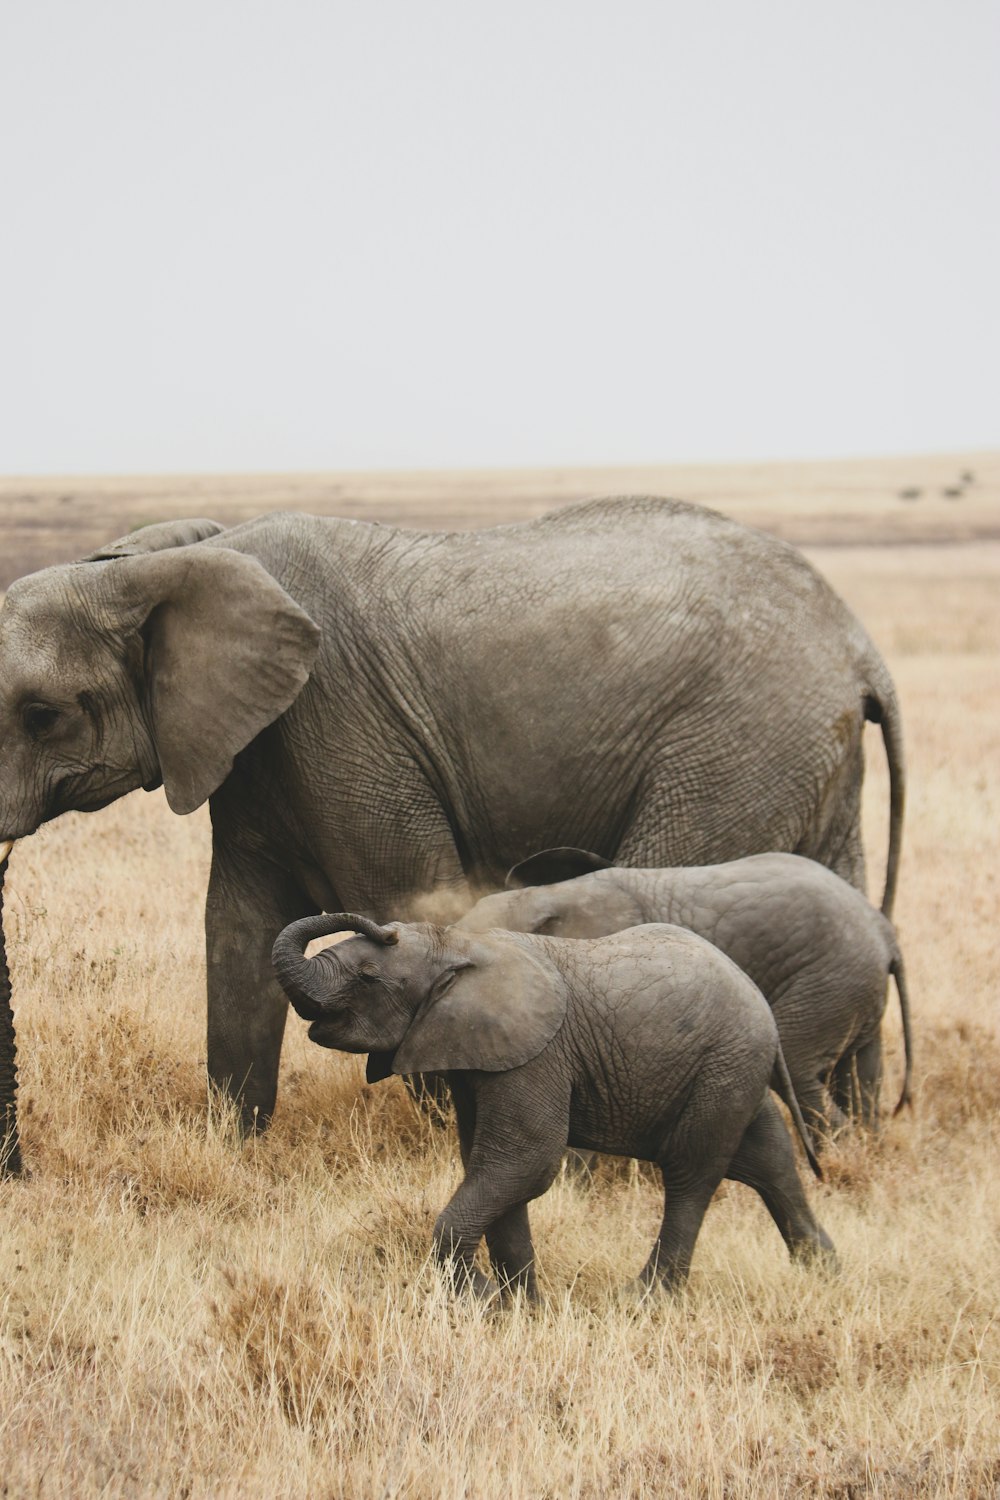 a group of elephants walking across a dry grass field